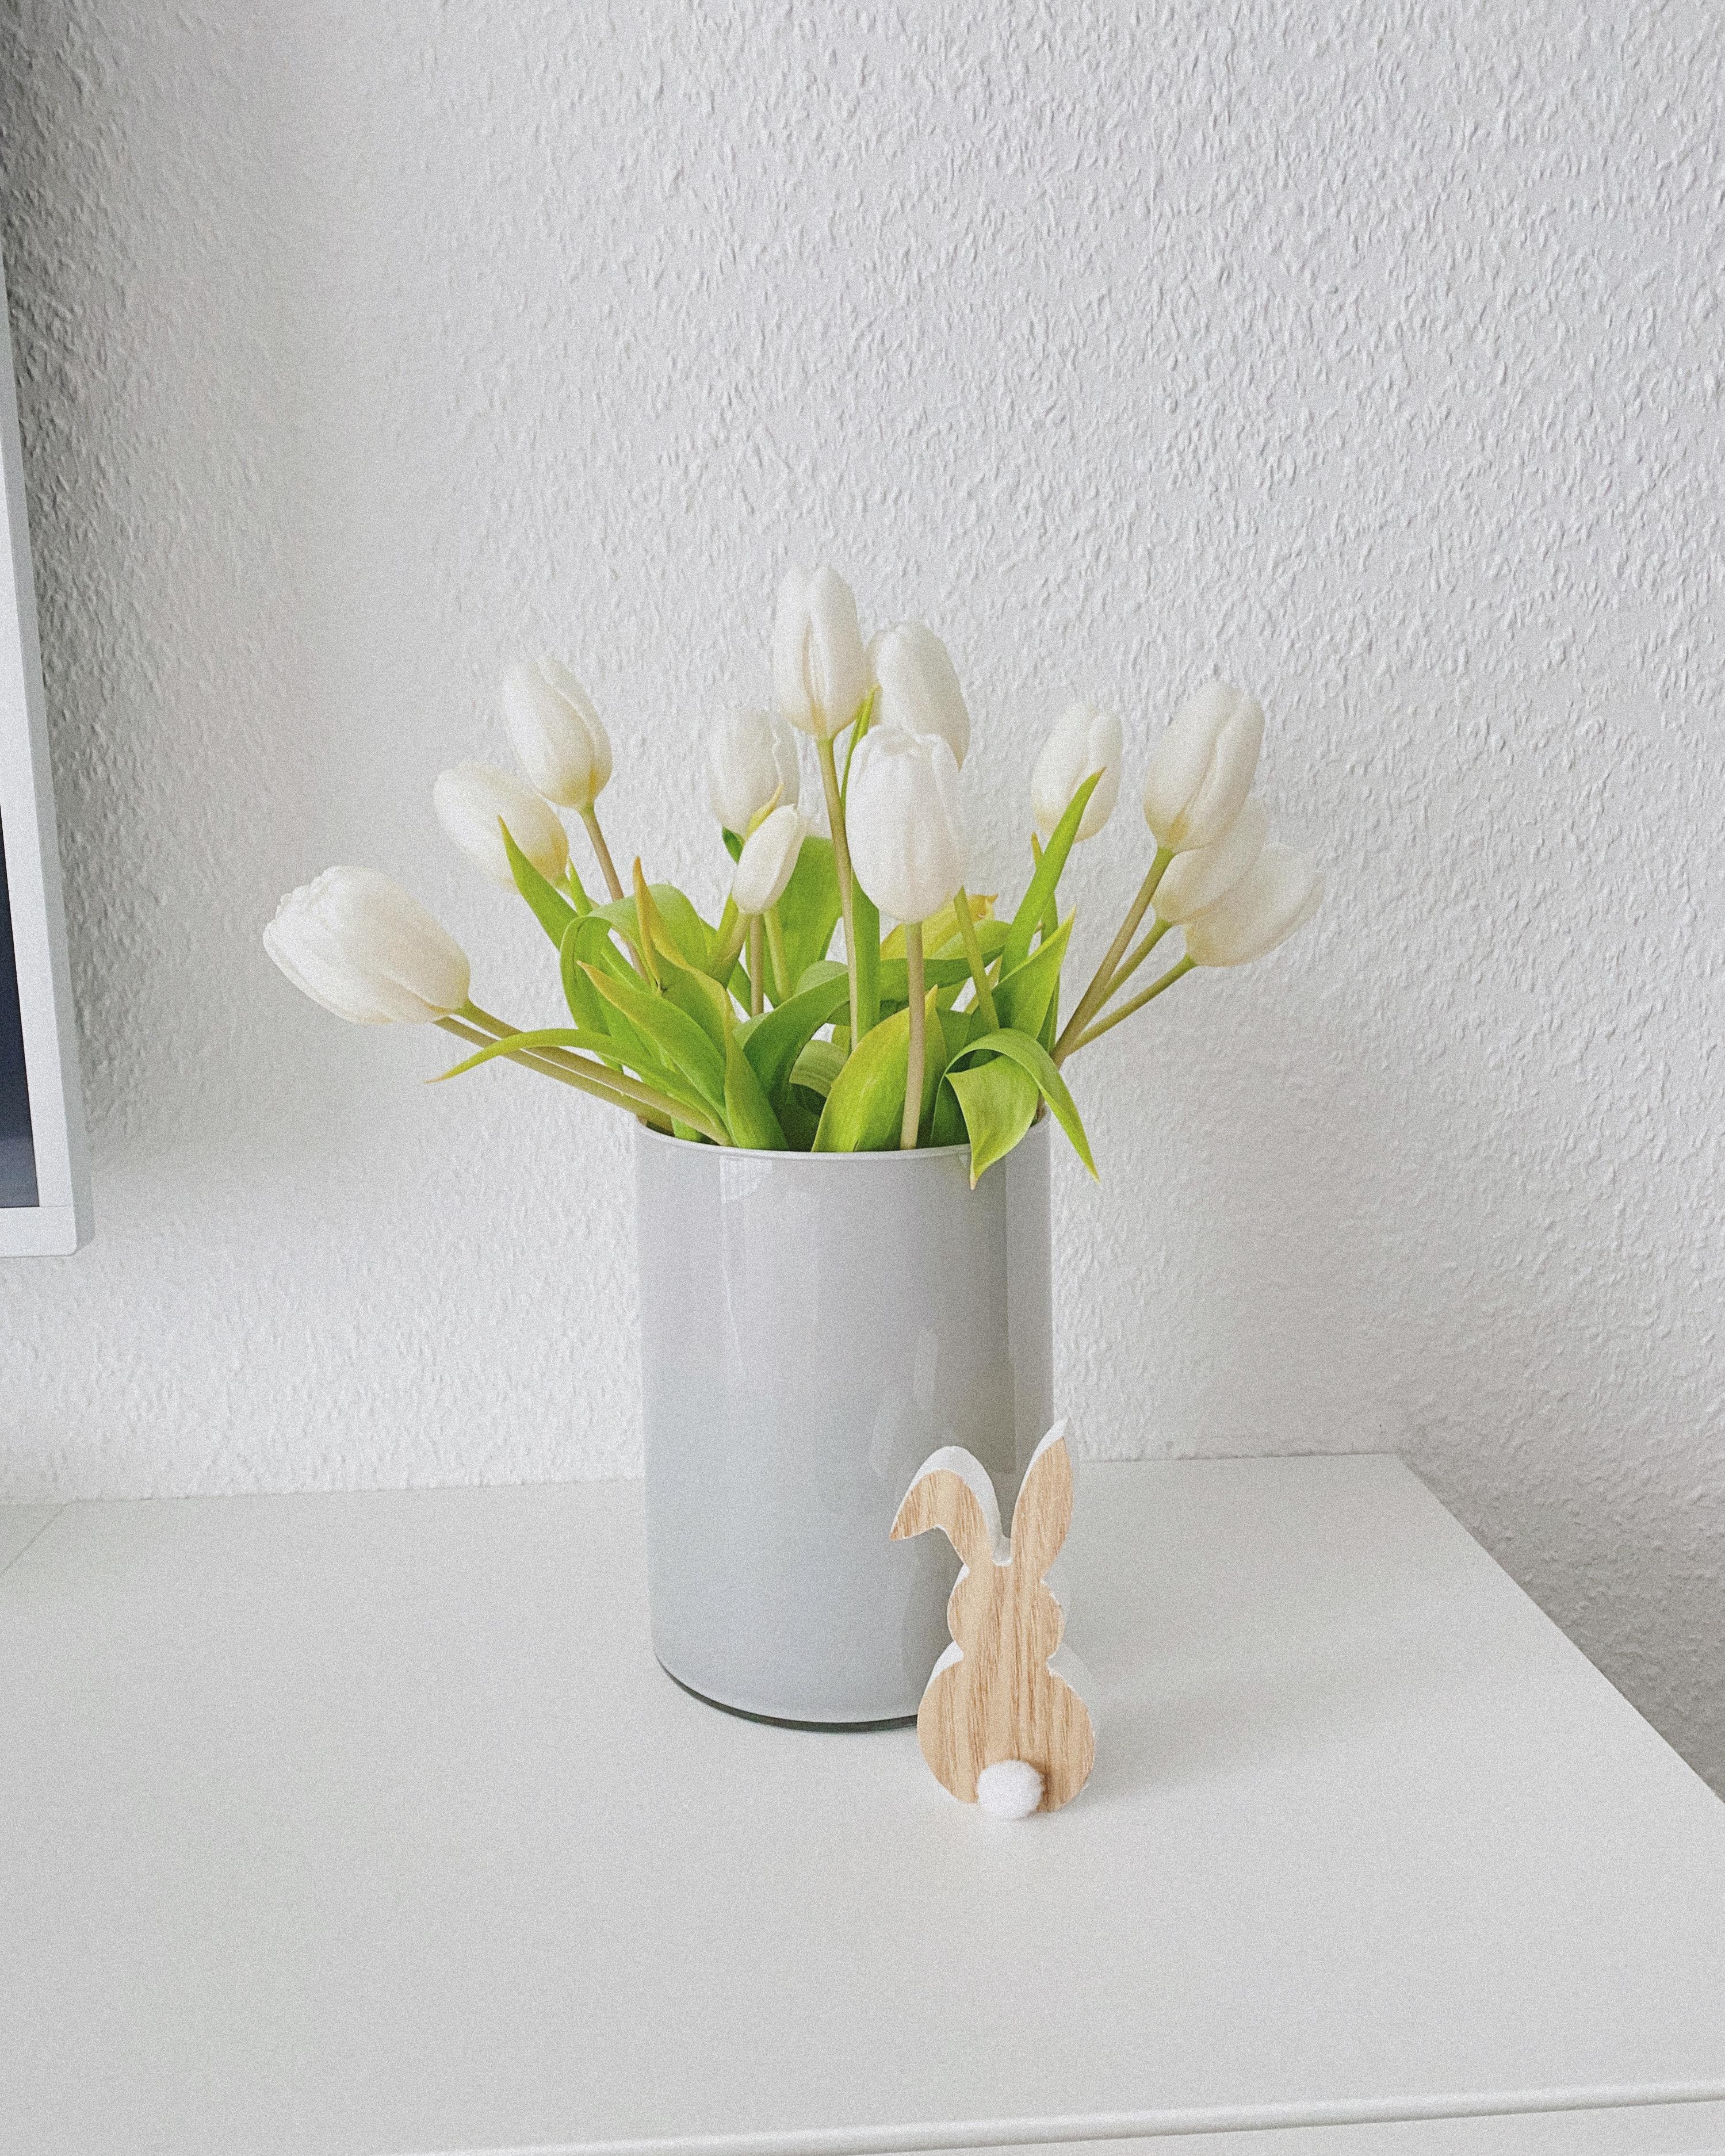 Frühlingsgruß 🌷
#tulpen#deko#frühling